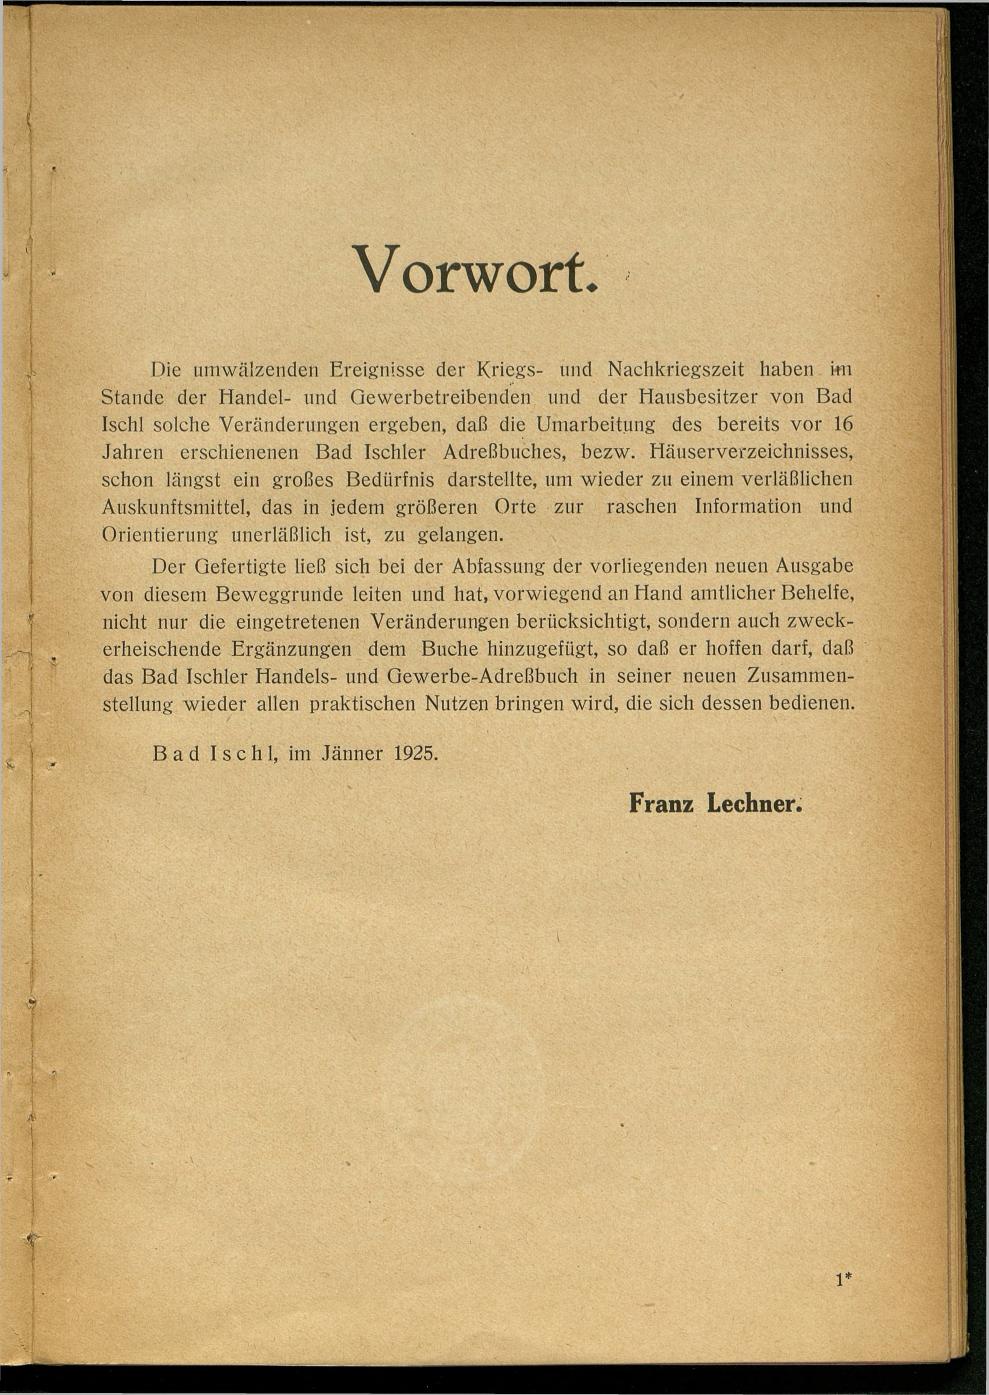 Handels- und Gewerbe-Adressbuch nebst Häuser-Verzeichnis der Kurortsgemeinde Bad Ischl 1925 - Seite 7